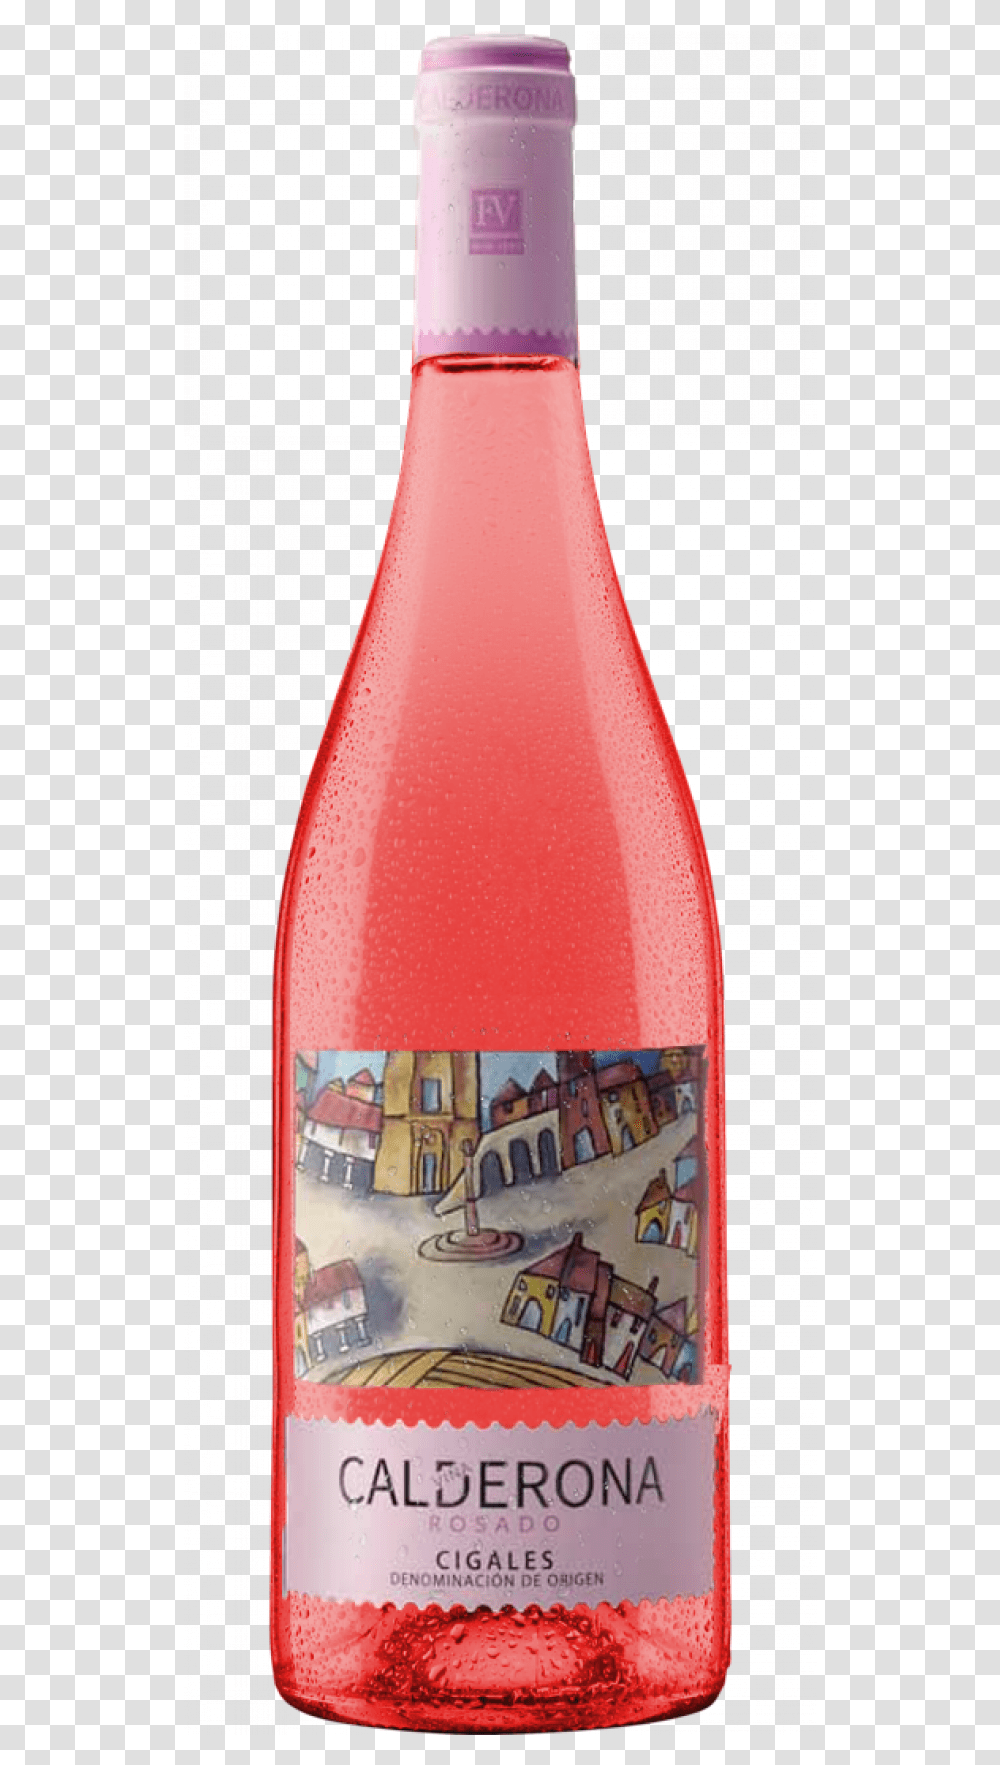 Calderona Rosado Cigales Eric Kent Rose 2017, Beverage, Drink, Alcohol, Bottle Transparent Png